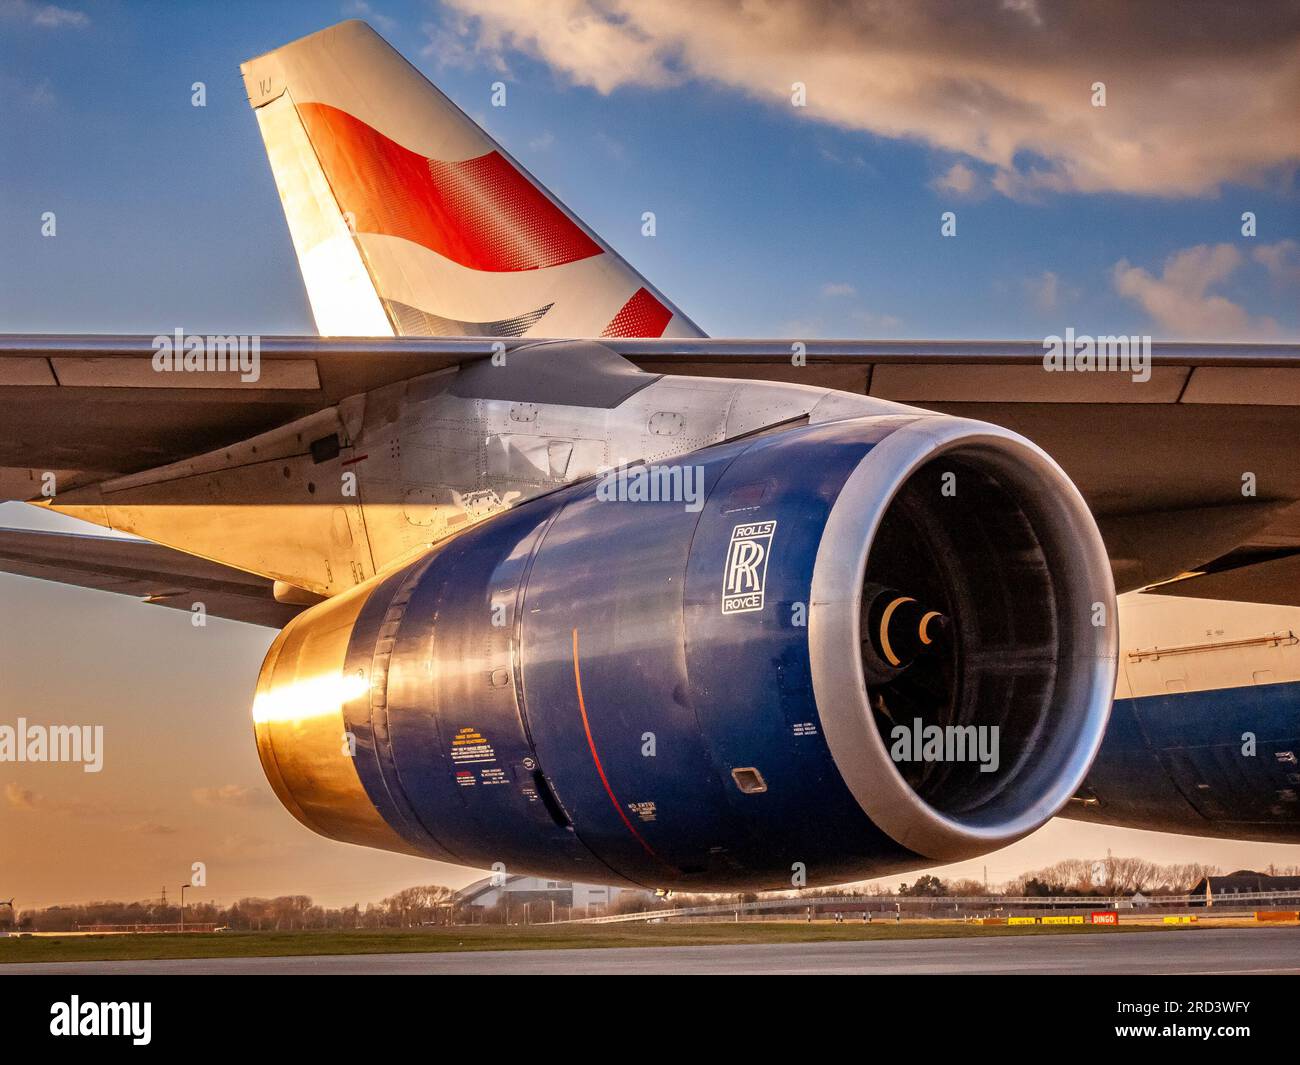 Nel tardo pomeriggio, il sole si apre su un motore Rolls Royce RB211 a propulsione di un Boeing 747-400 G-CIVJ della British Airways presso l'aeroporto di Londra Heathrow, Regno Unito Foto Stock